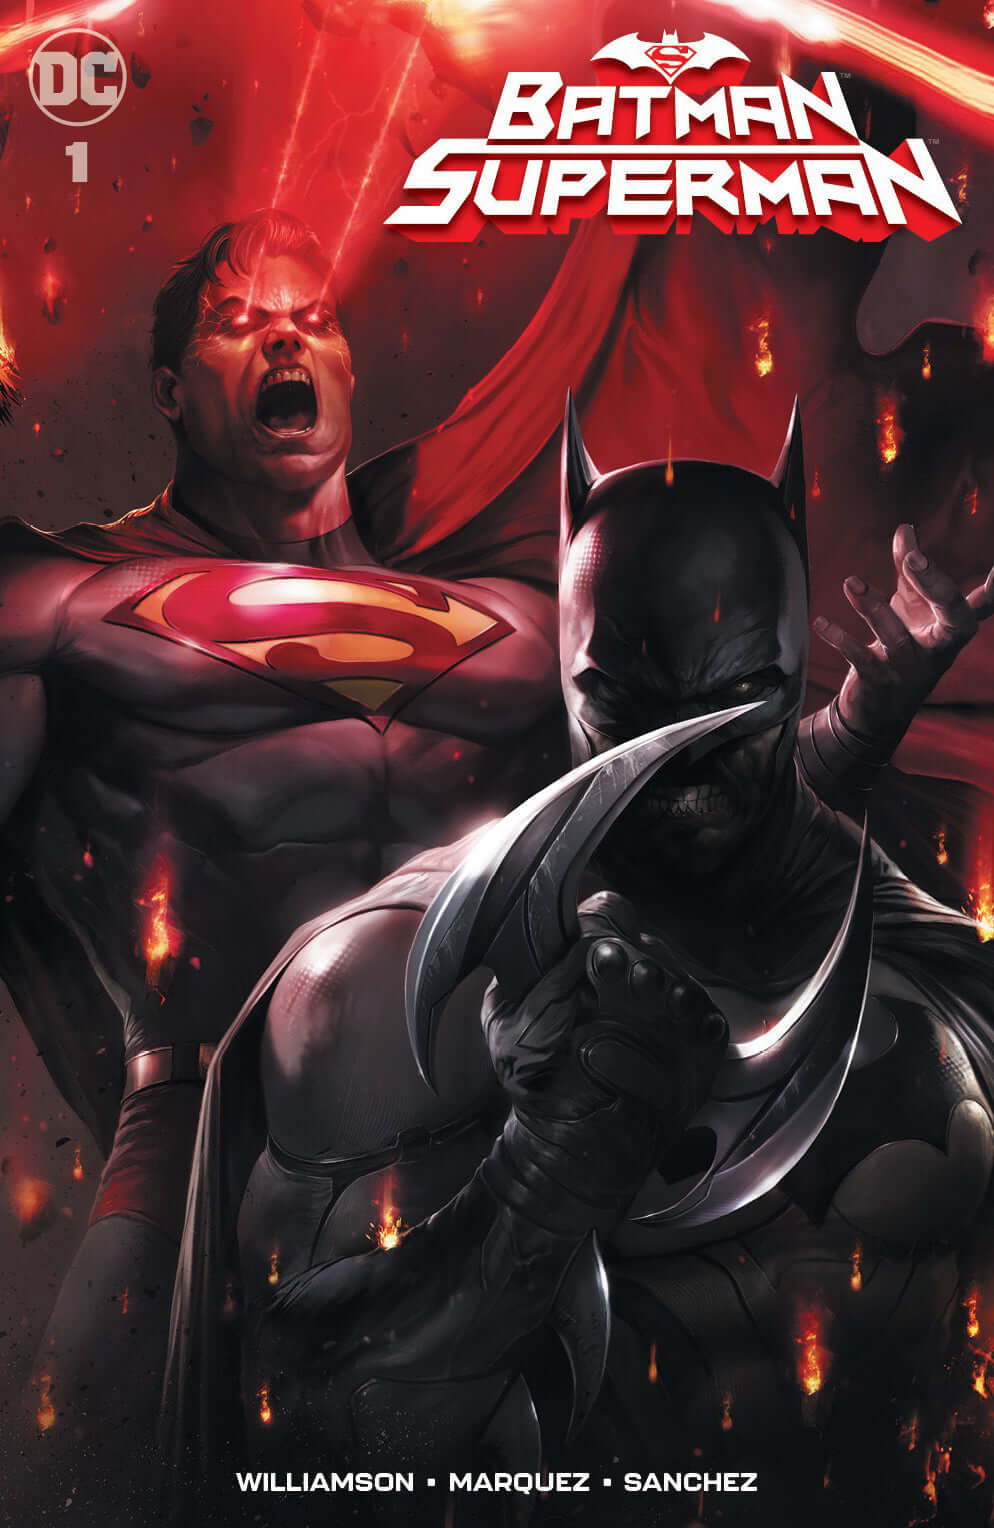 BATMAN SUPERMAN #1 Francesco Mattina Variant Trade + Virgin Set Options (08/28/2019) DC